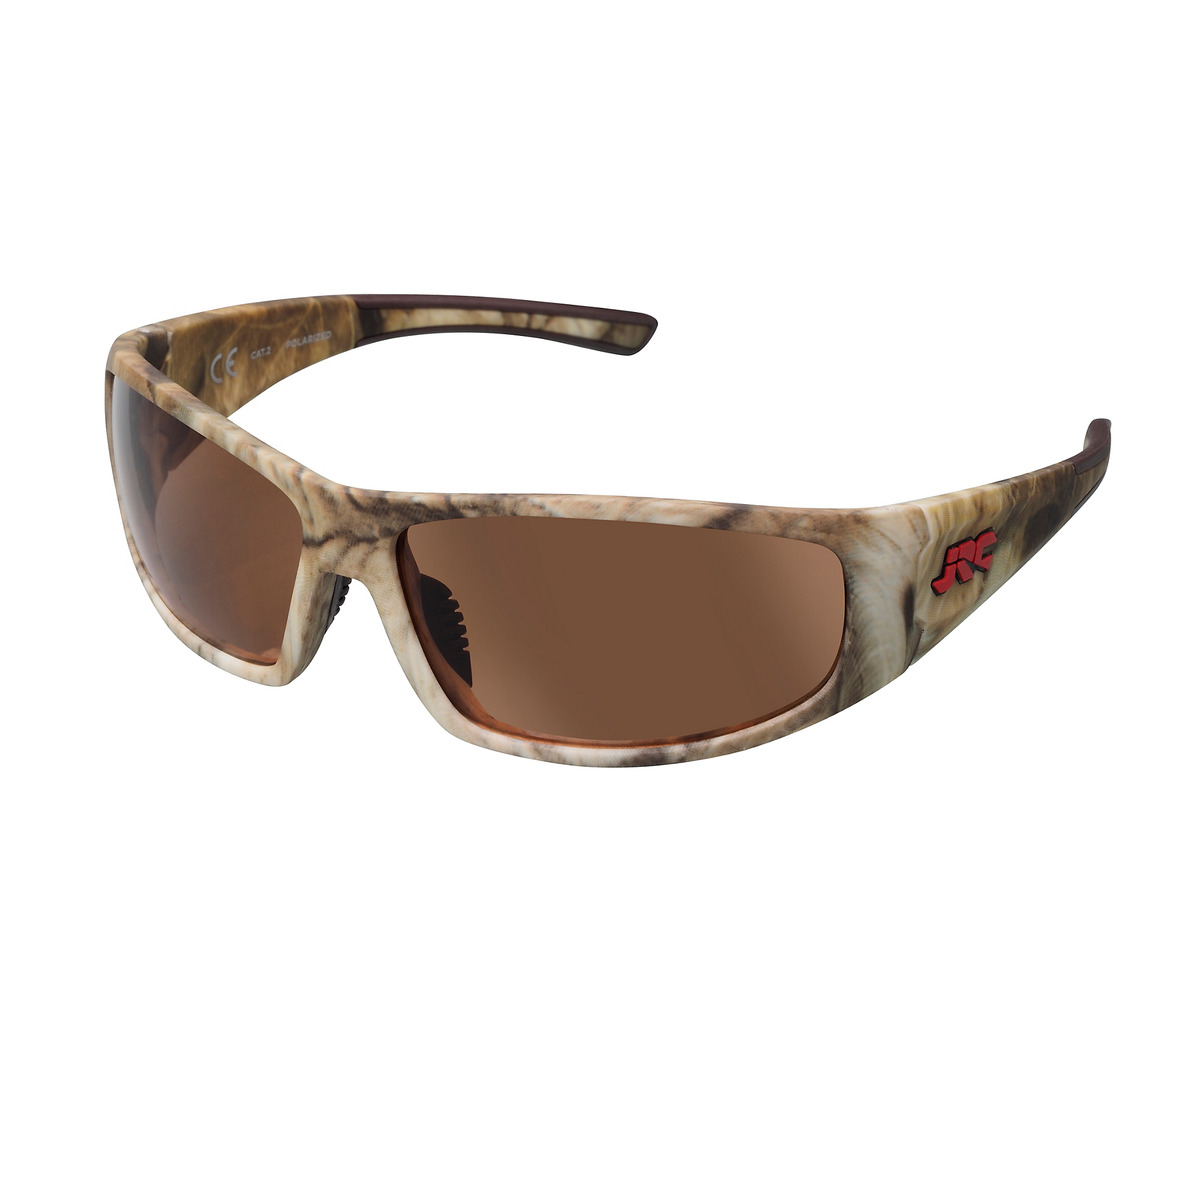 Jrc Stealth Sunglasses - Green Camo/Copper